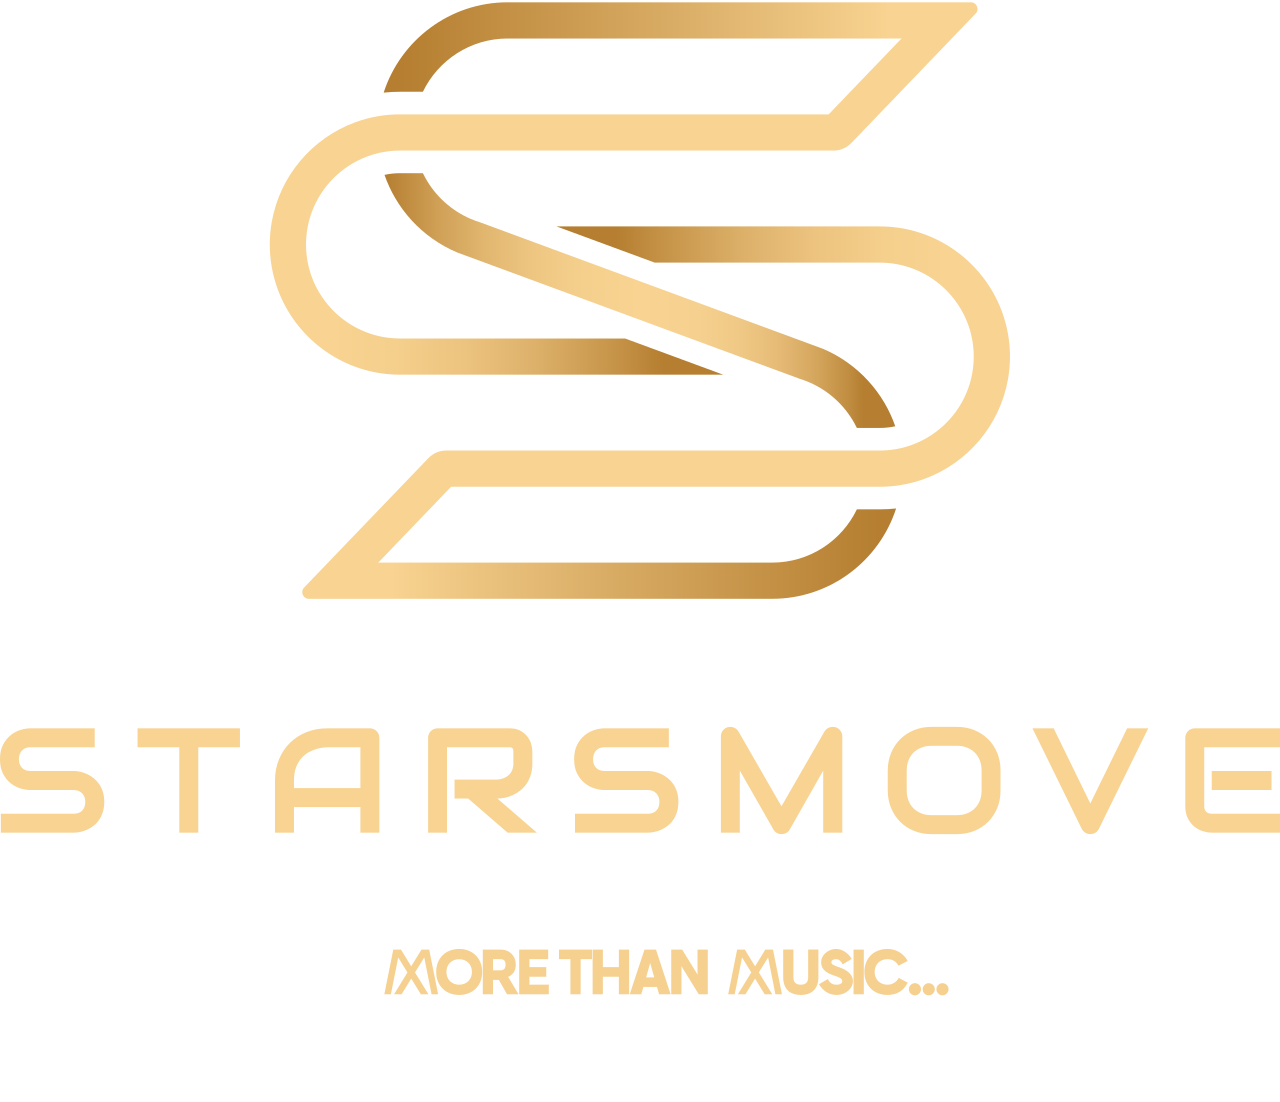 starsmove's logo